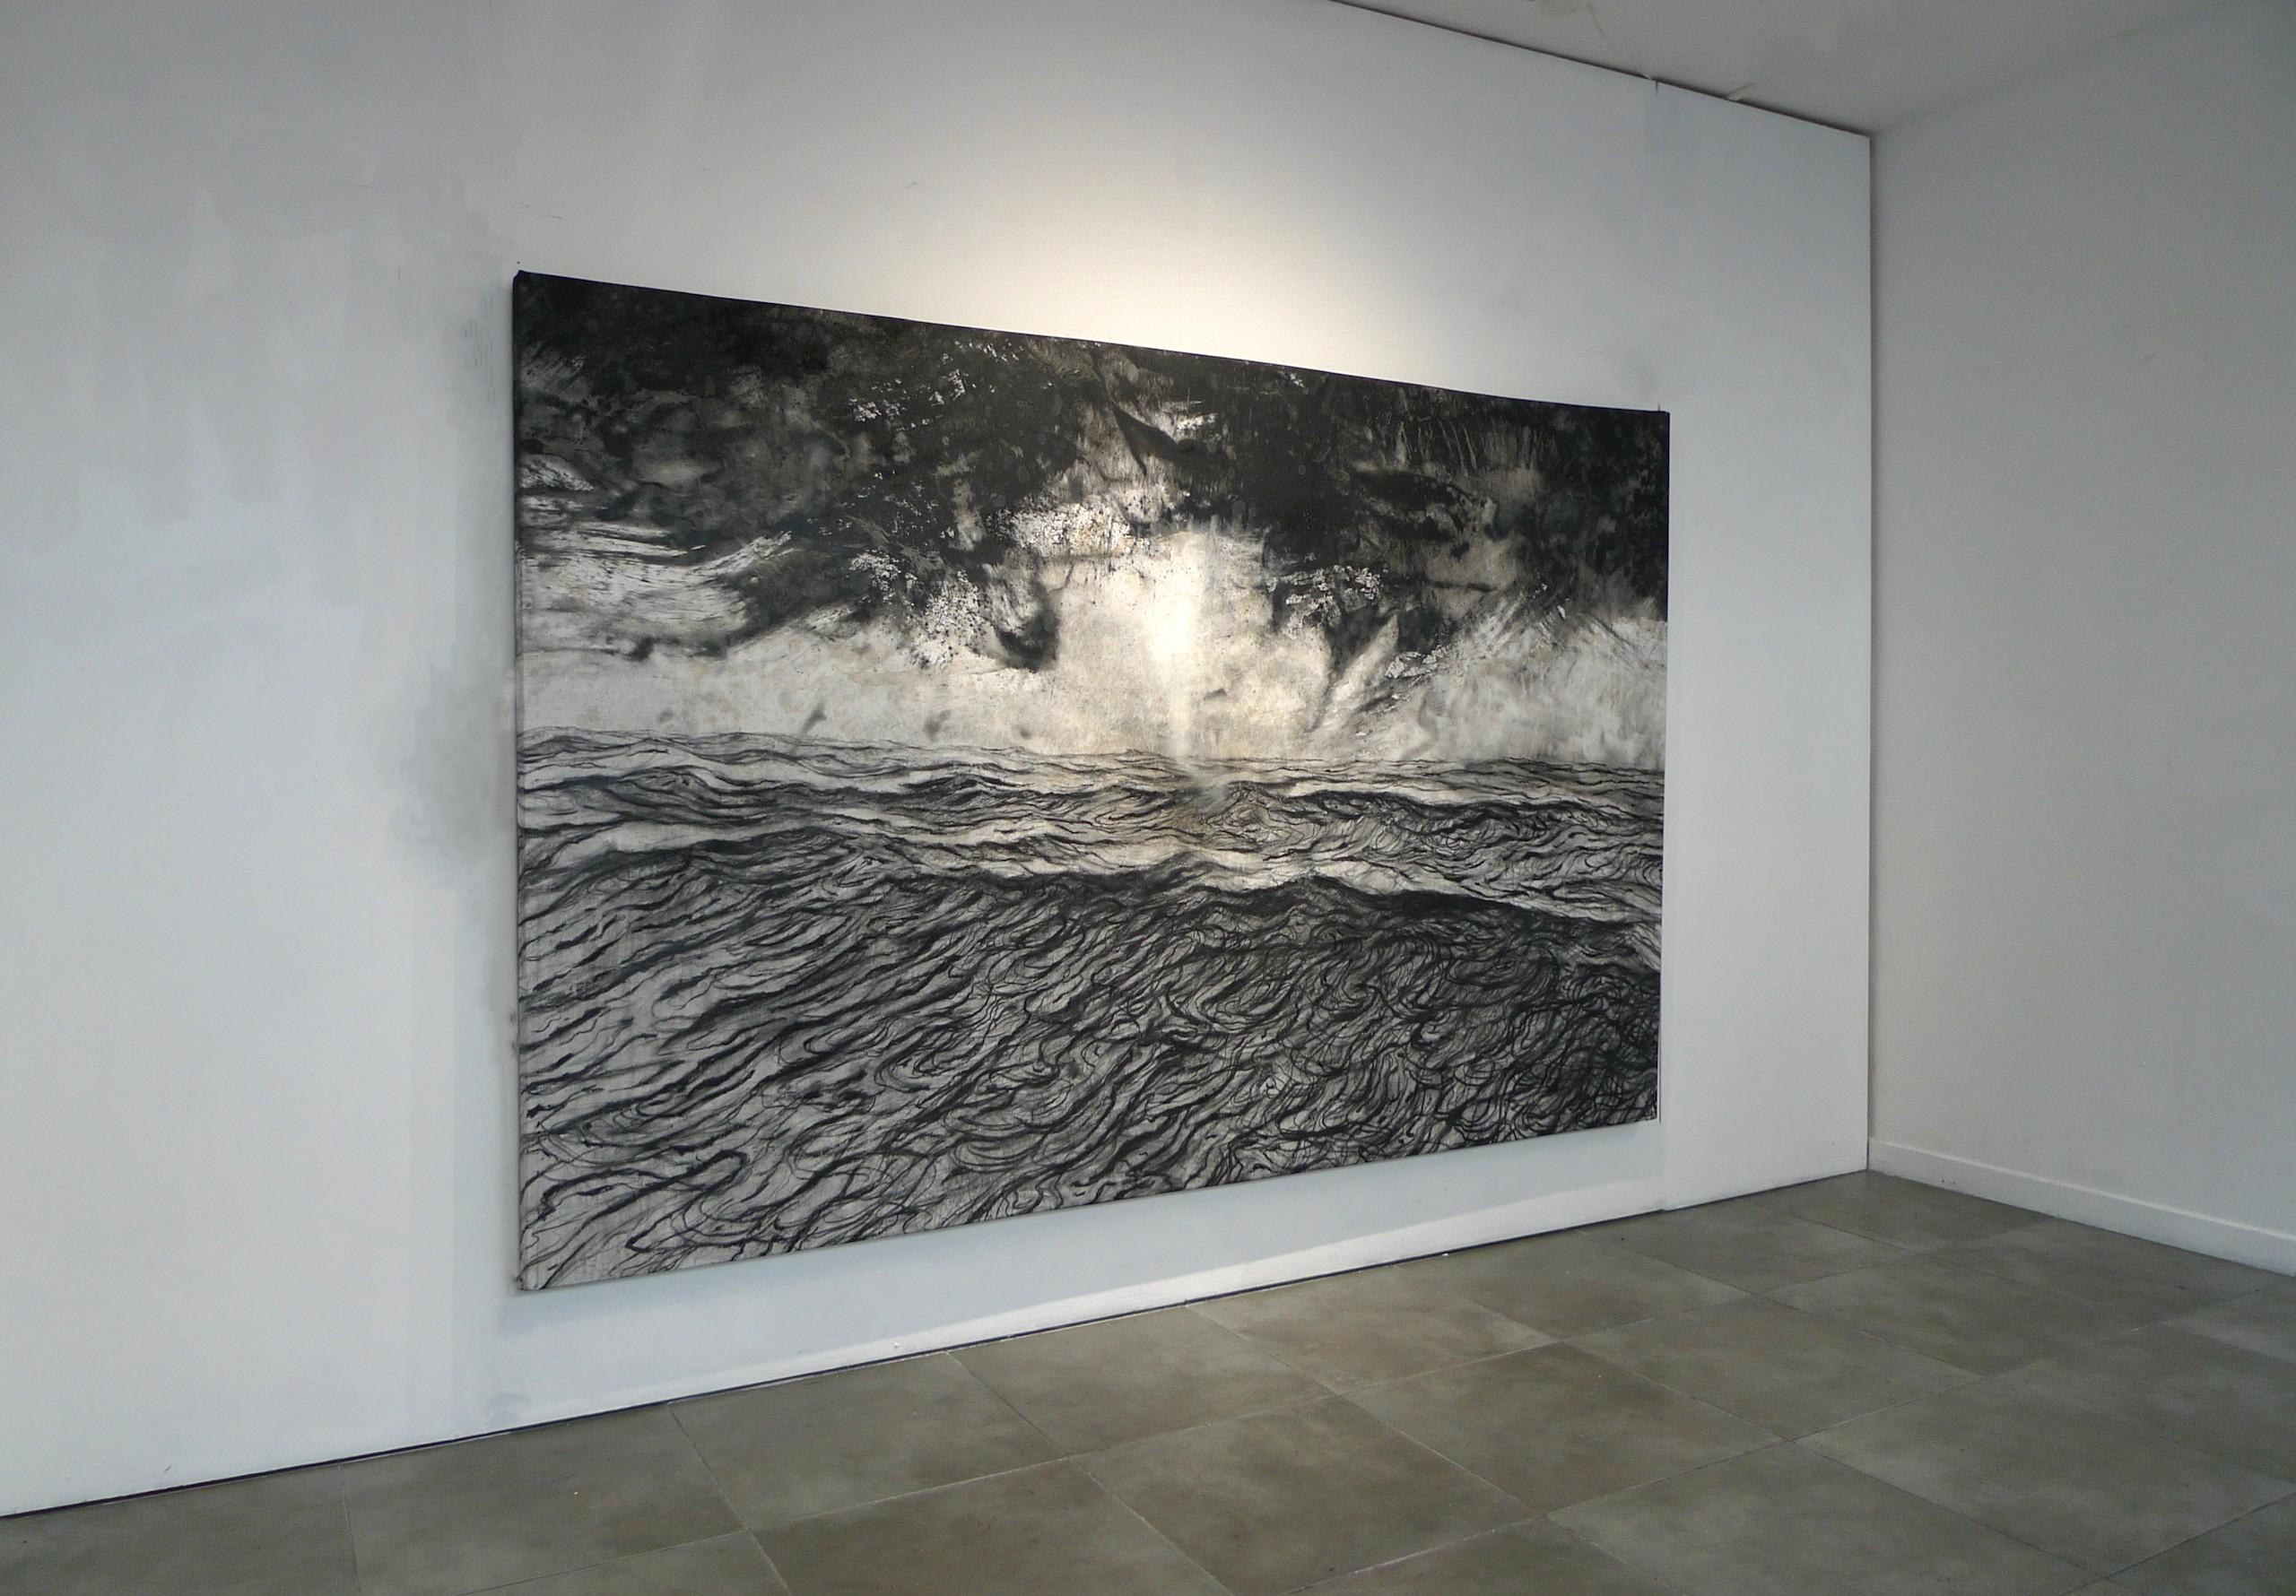 Alma by Franco Salas Borquez - Black & white painting, ocean waves, seascape For Sale 1